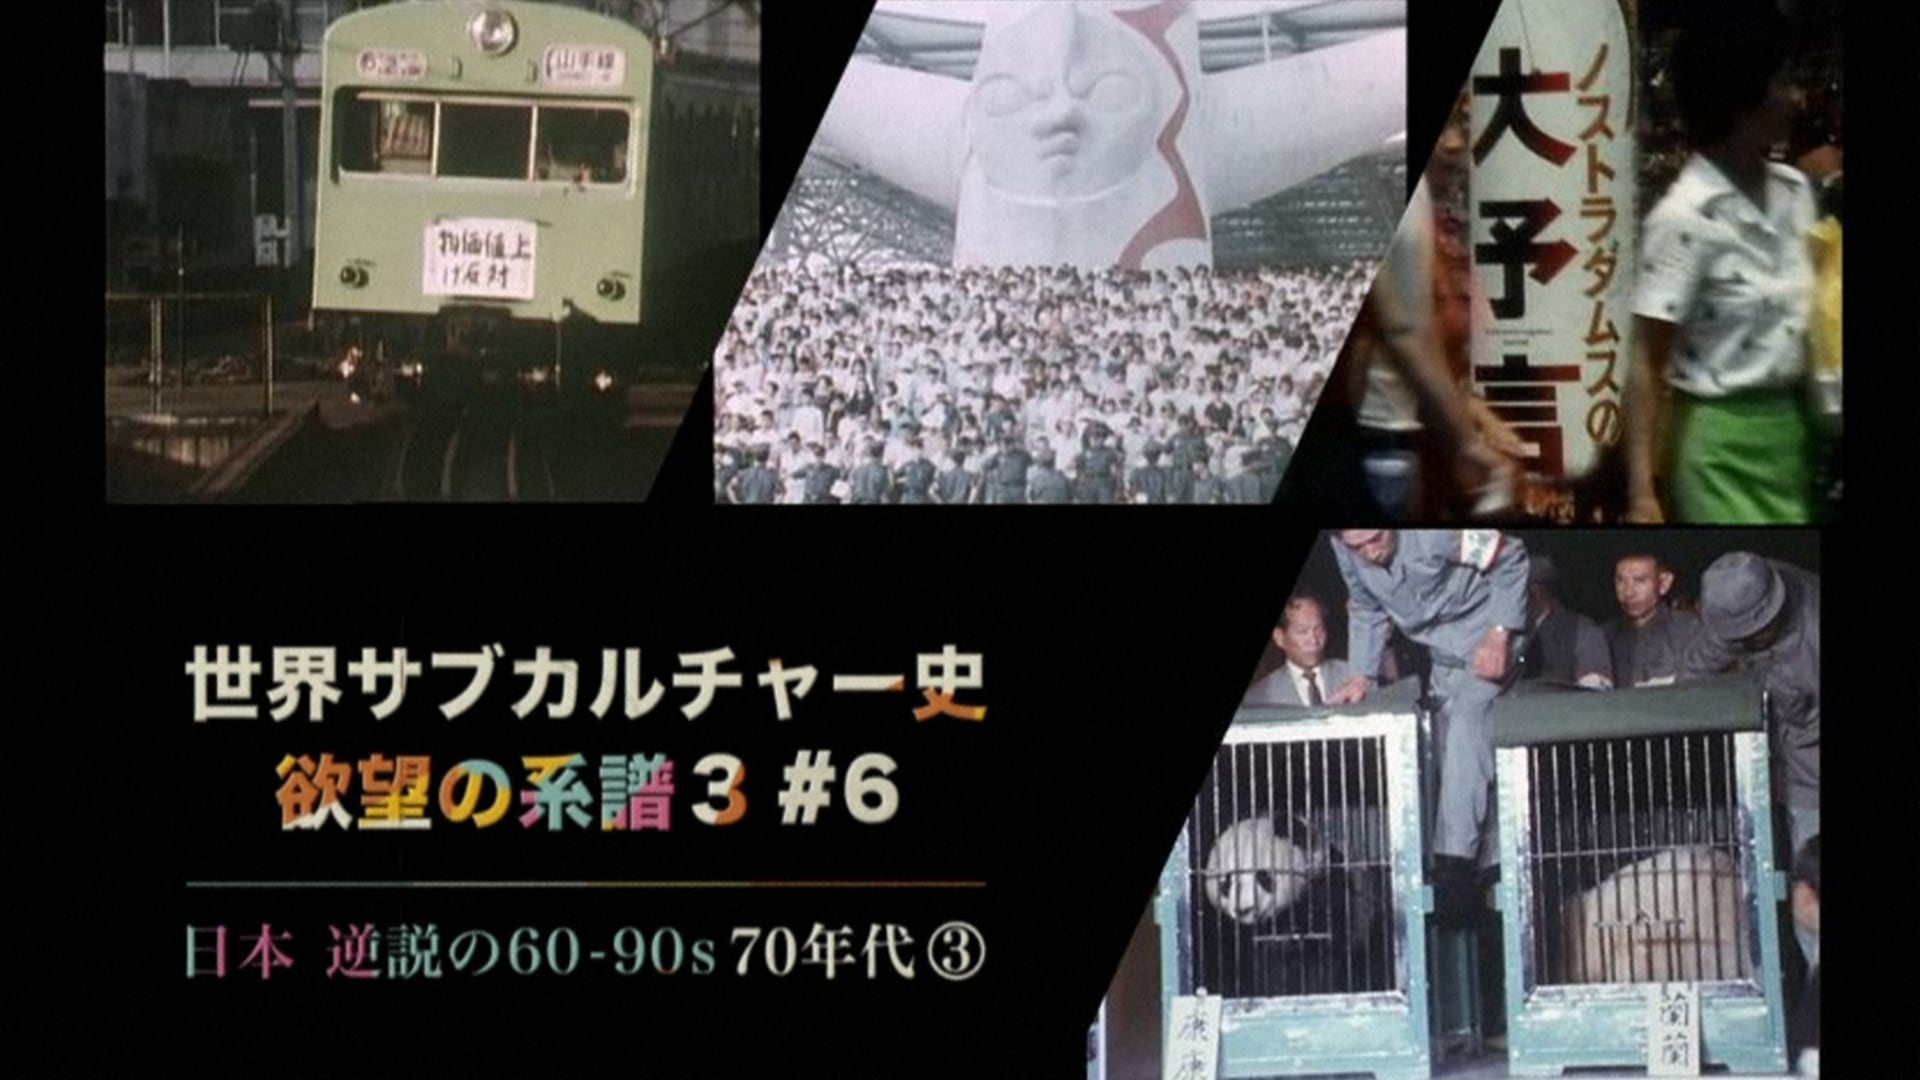 シーズン3 (6)日本 逆説の60-90s 70年代 第3回 - 世界サブカルチャー史 欲望の系譜